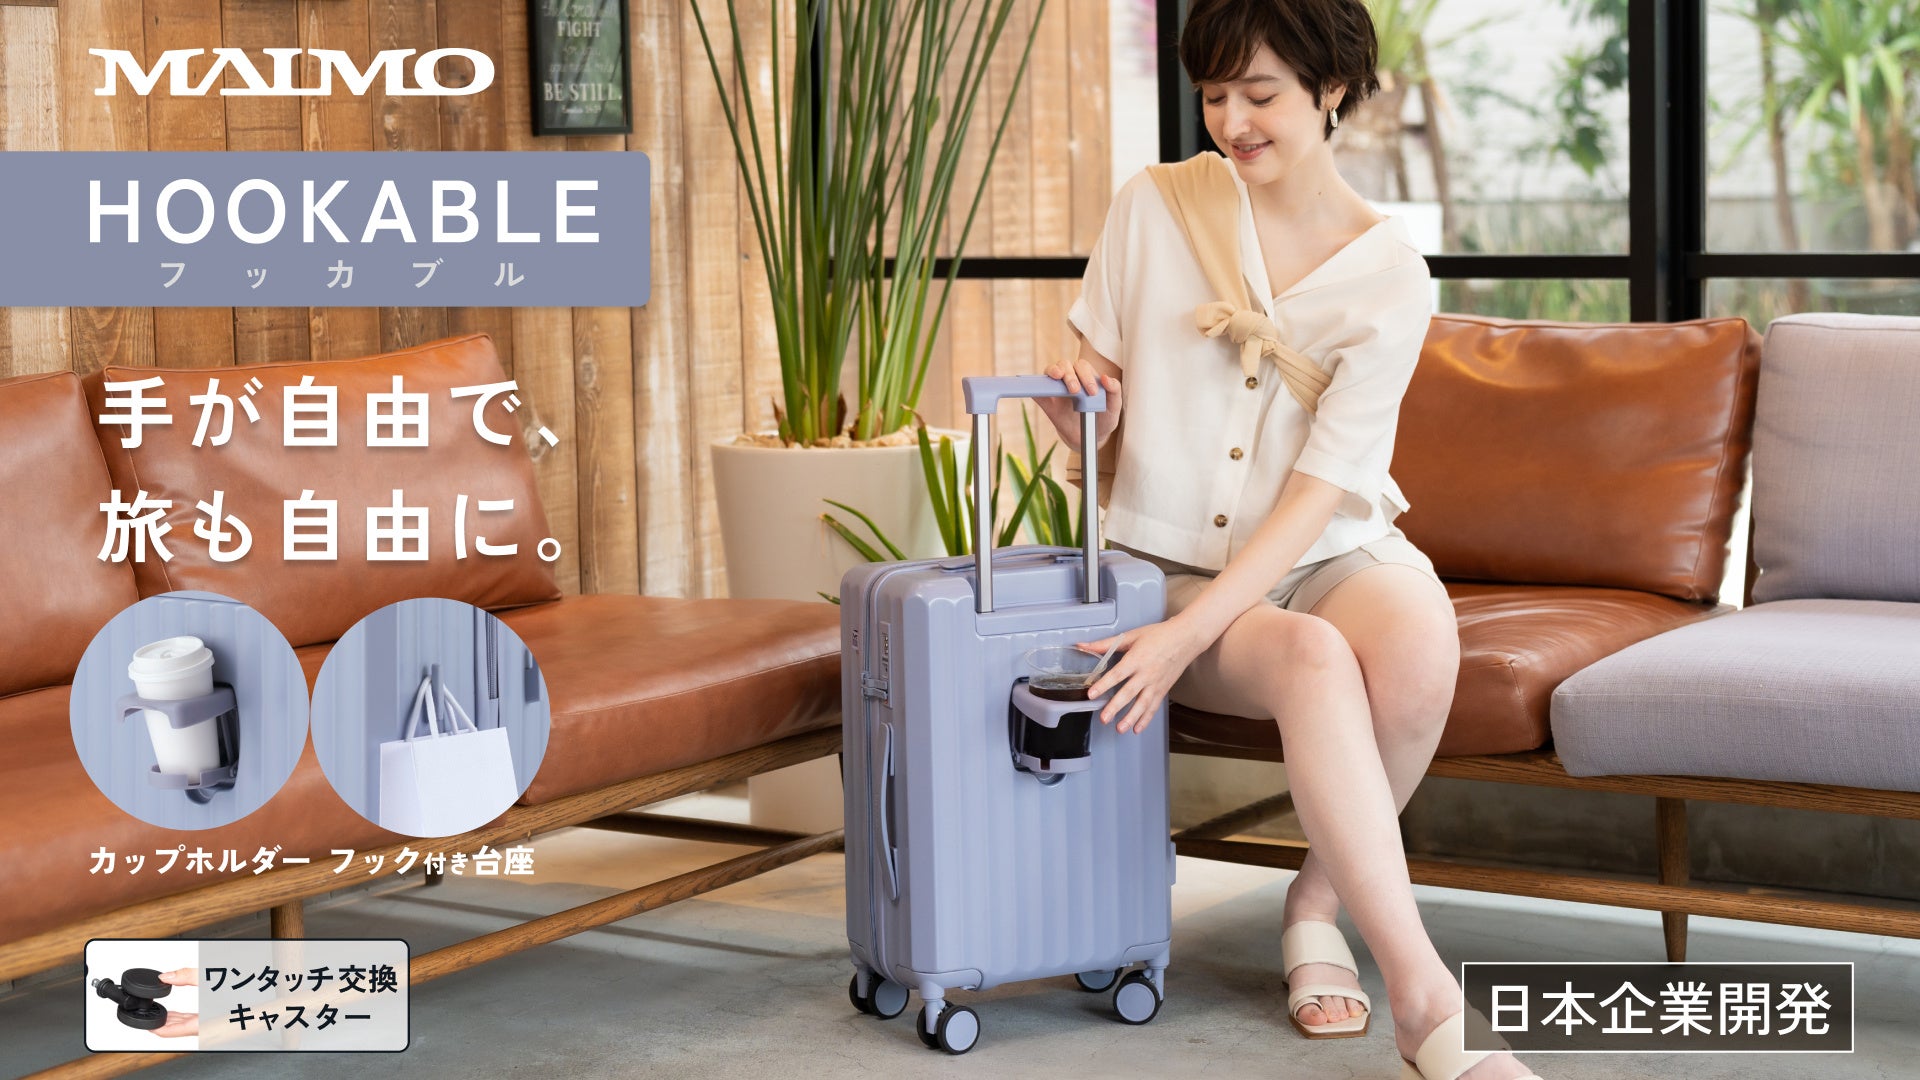 【MAIMO】移動時に両手が塞がってしまう課題を解決！便利な機能が満載のスーツケース「HOOKABLE」が誕生。